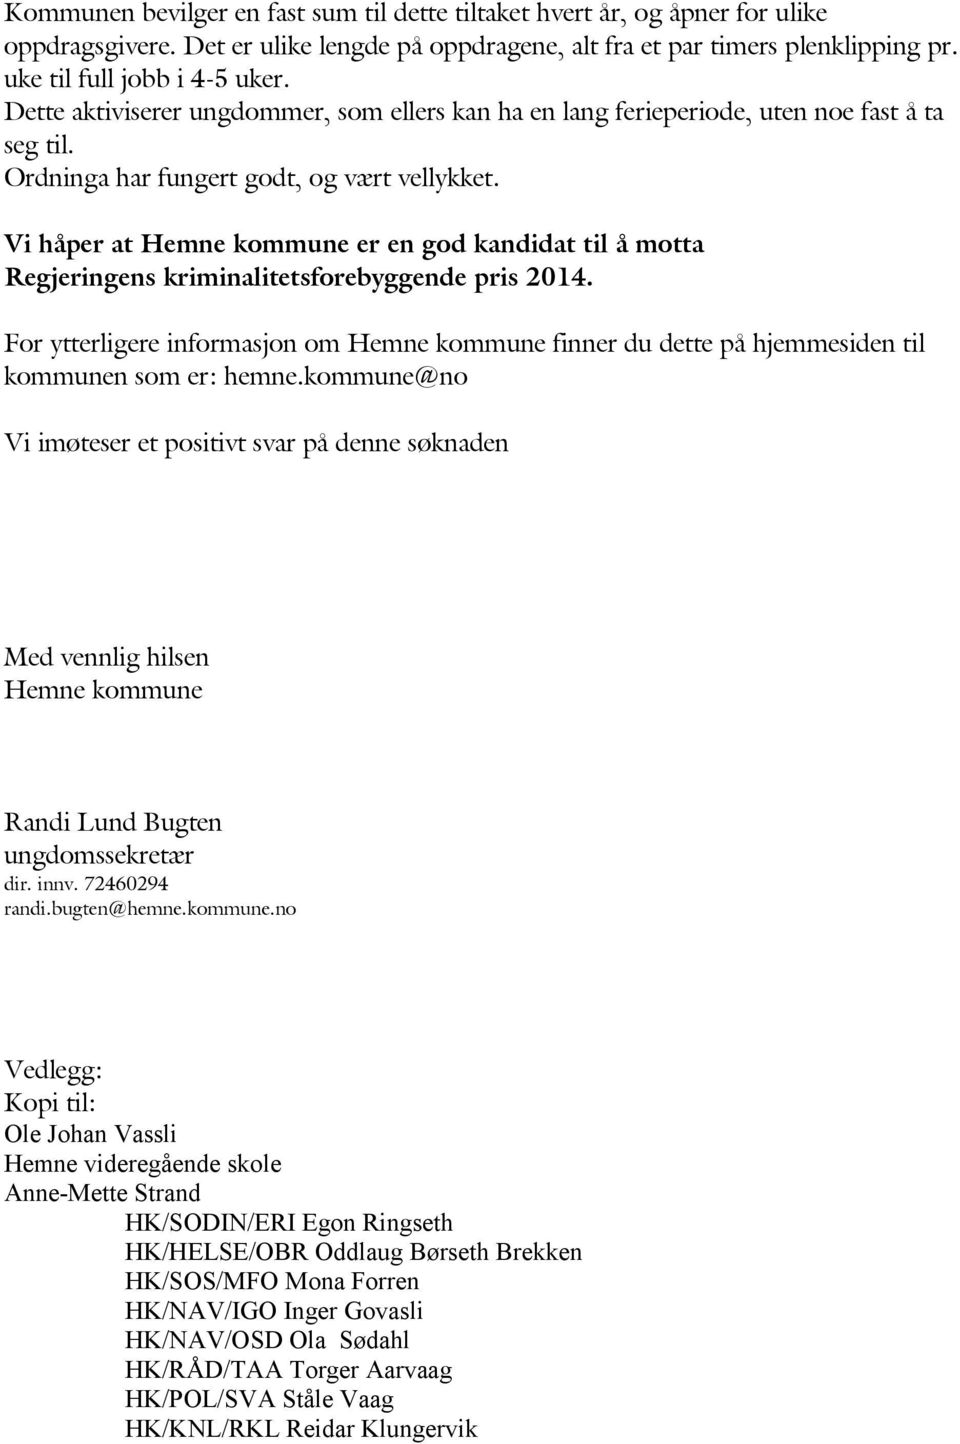 Vi håper at Hemne kommune er en god kandidat til å motta Regjeringens kriminalitetsforebyggende pris 2014.